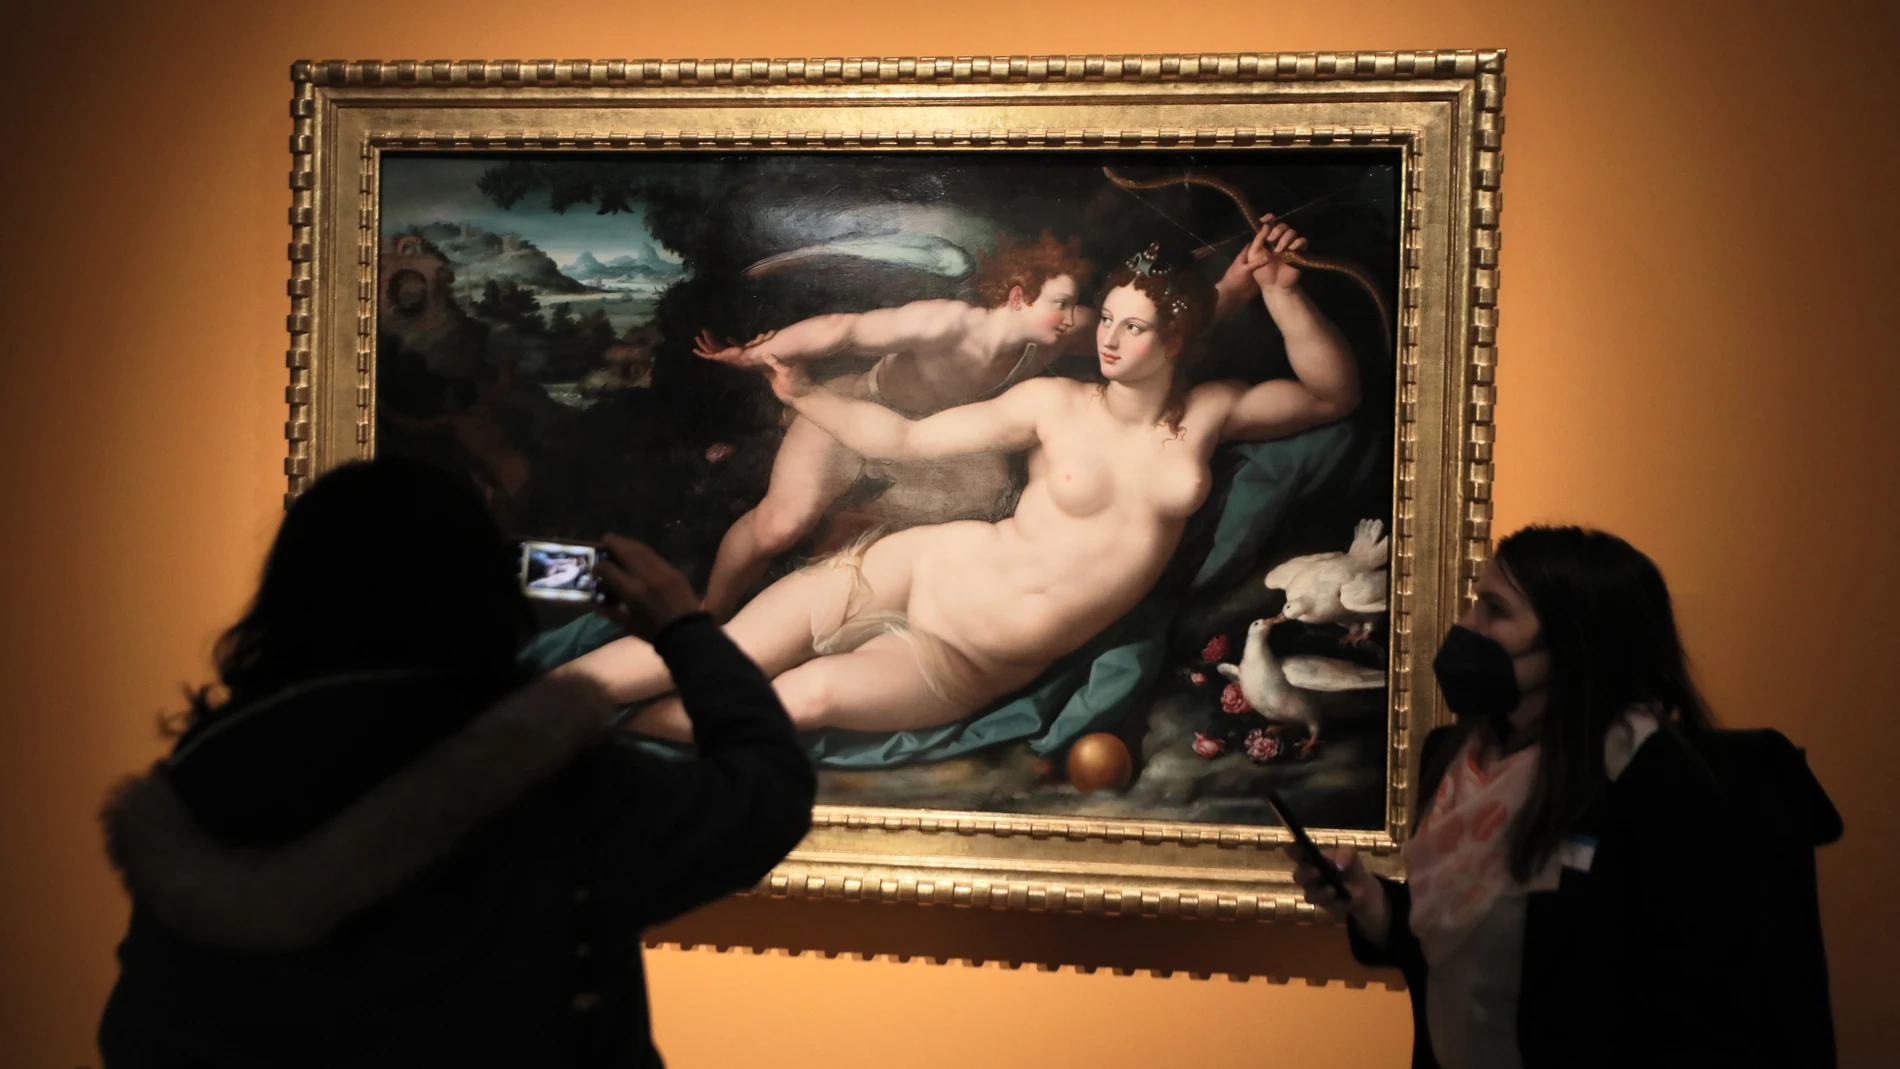 Entre otros personajes, la exposición se centra en dos figuras importantes dentro de la mitología como son Venus y Cupido, en el cuadro